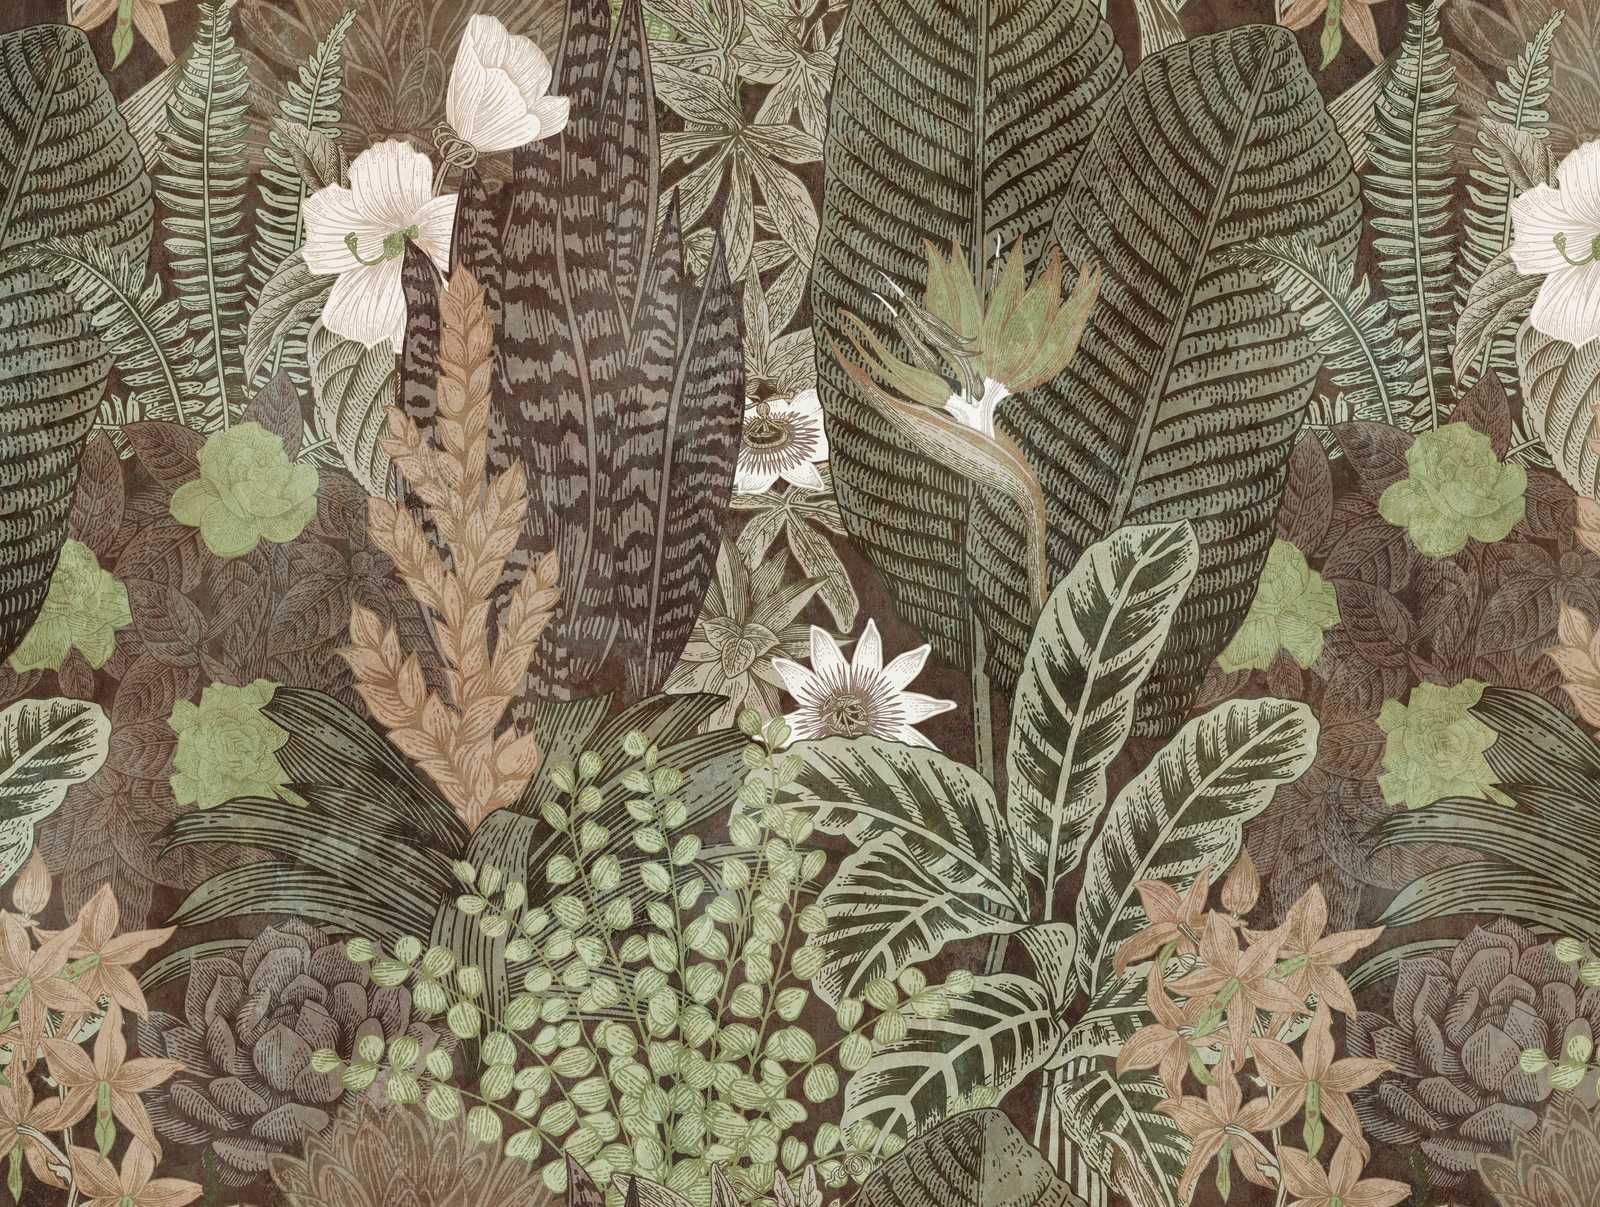             Novedades en papel pintado - papel pintado con motivo de la naturaleza en estilo de dibujo, marrón y verde
        